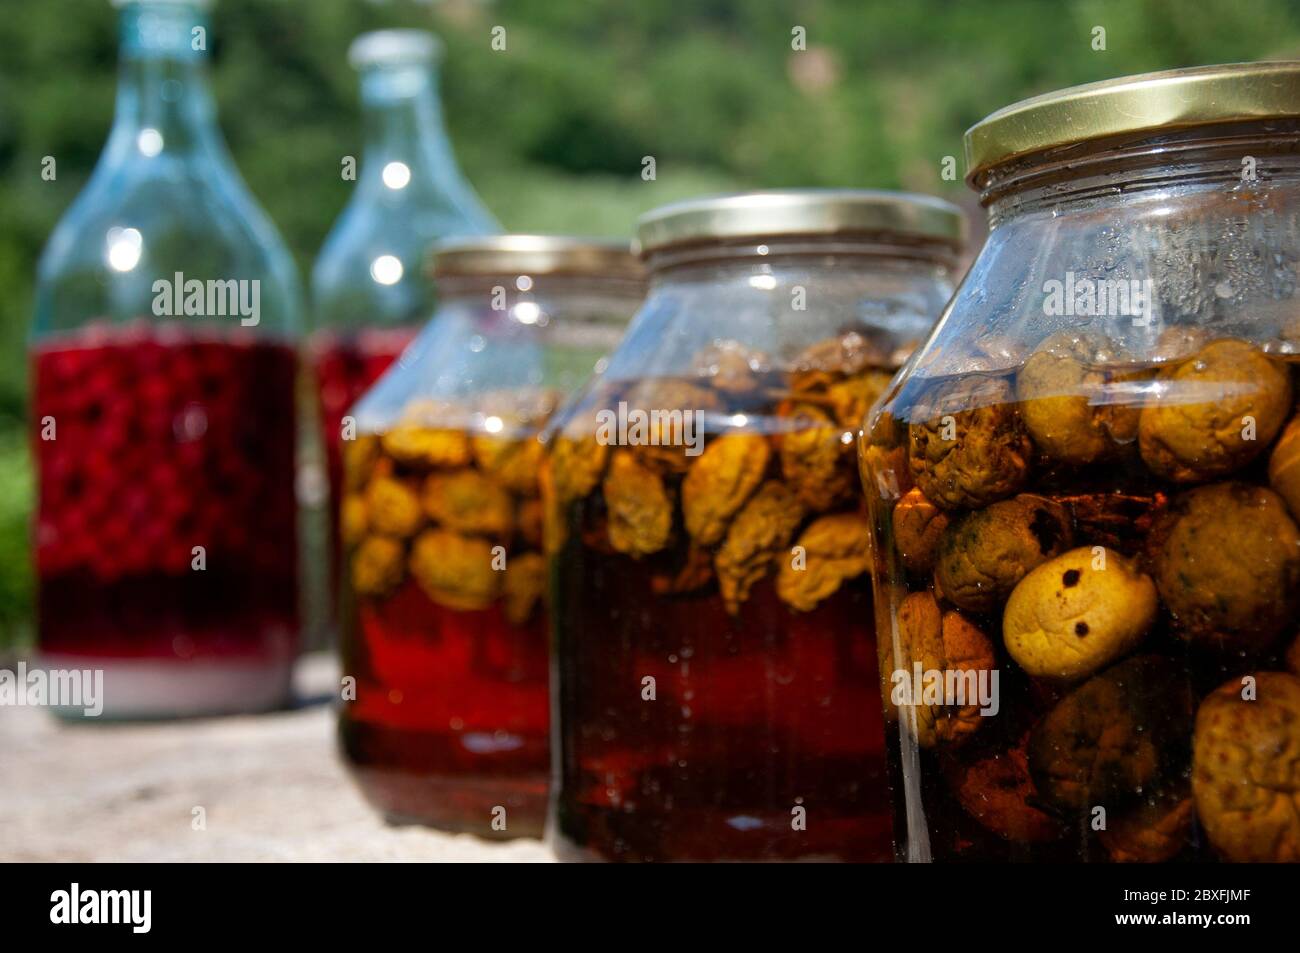 Vasetti di vetro con mele fermentanti e zucchero come tecnica artigianale di produzione di liquori a basso contenuto alcolico nella regione dei Balcani. Foto Stock